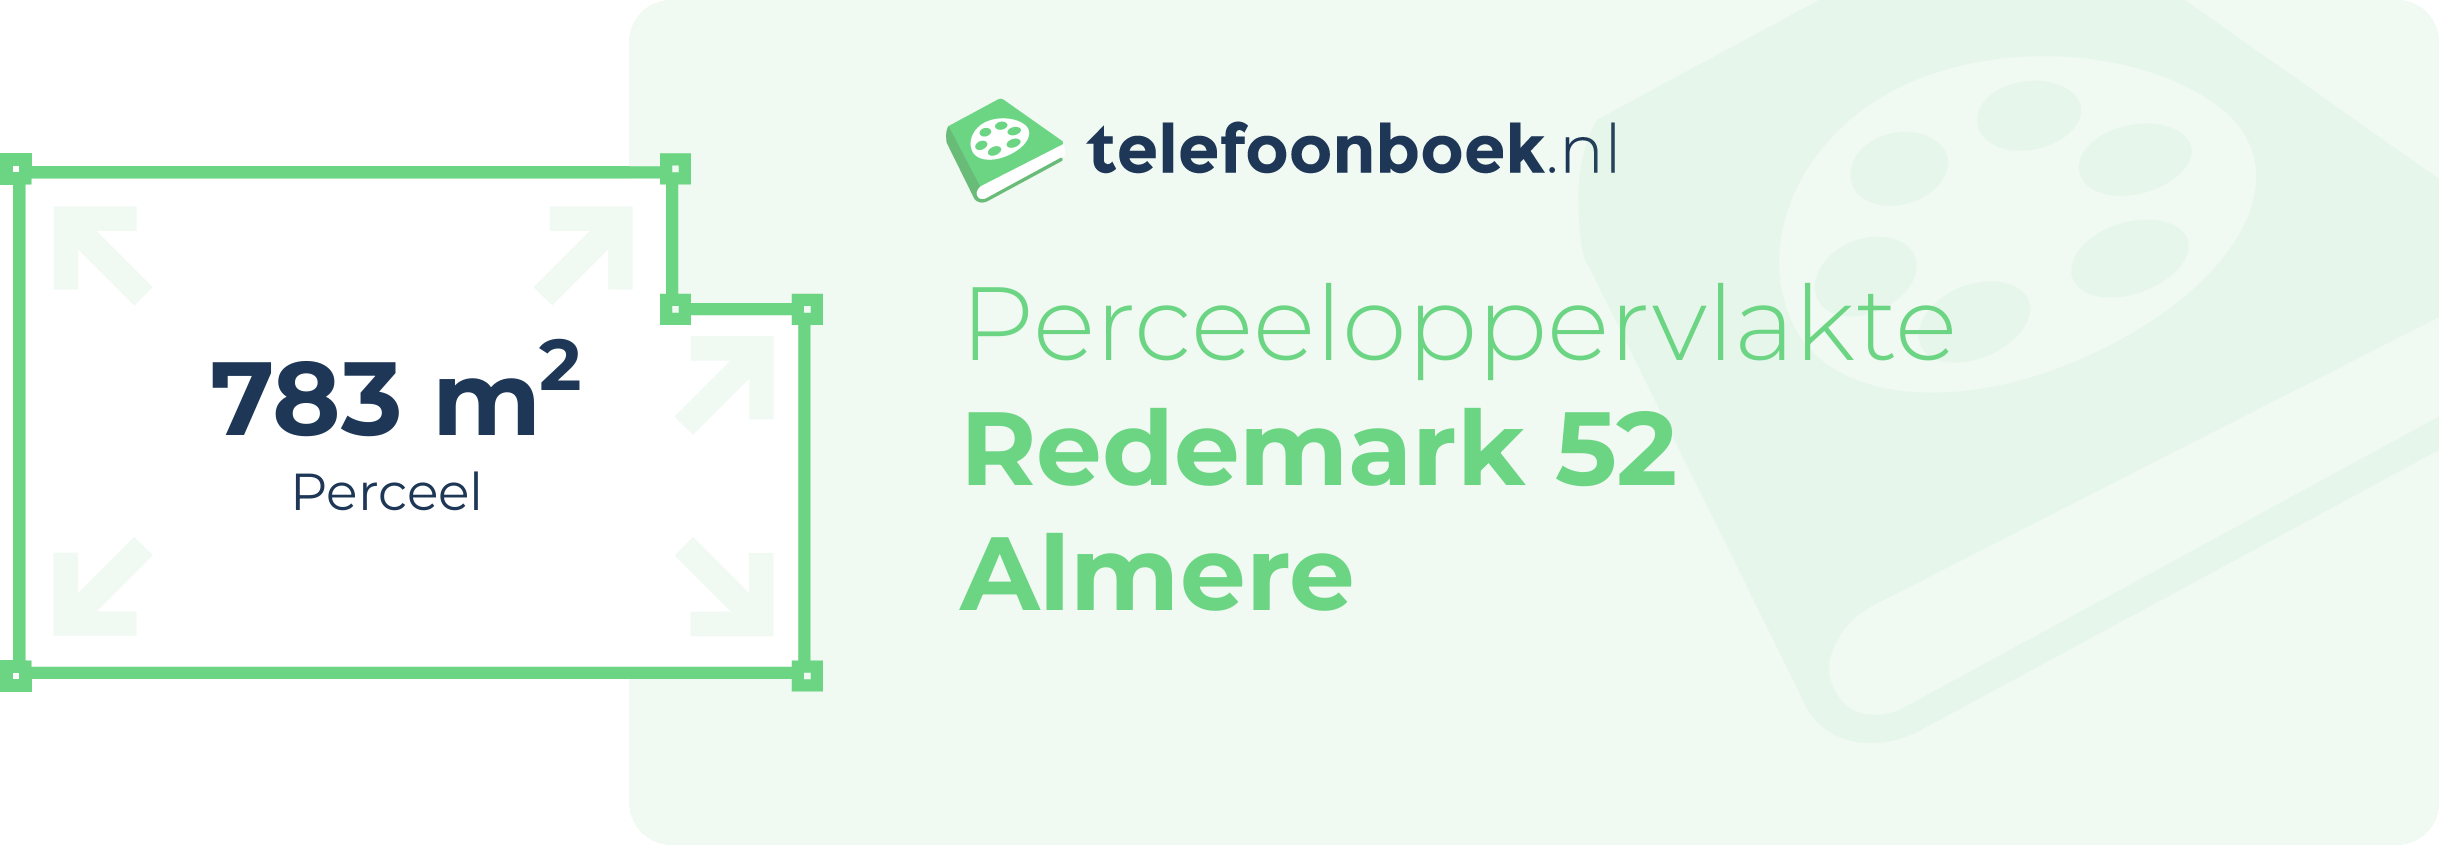 Perceeloppervlakte Redemark 52 Almere